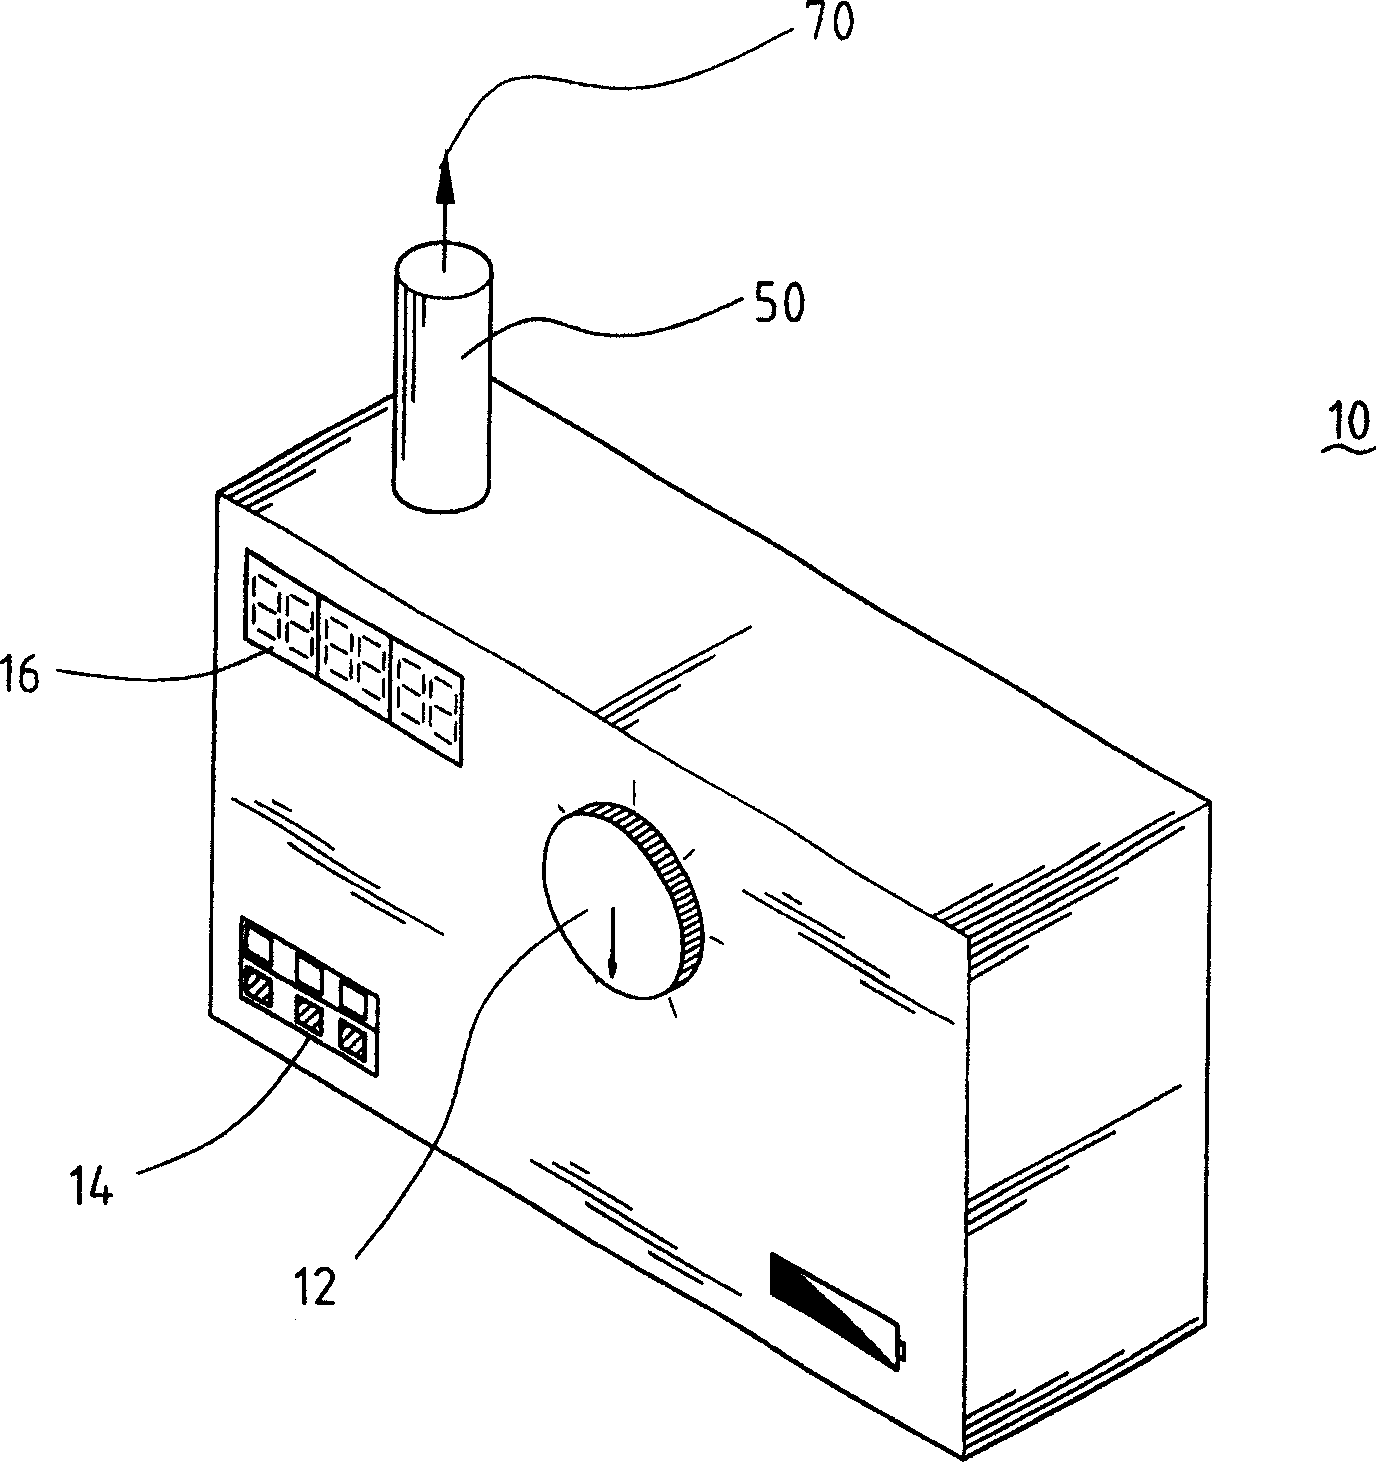 Portable high-frequency respirator